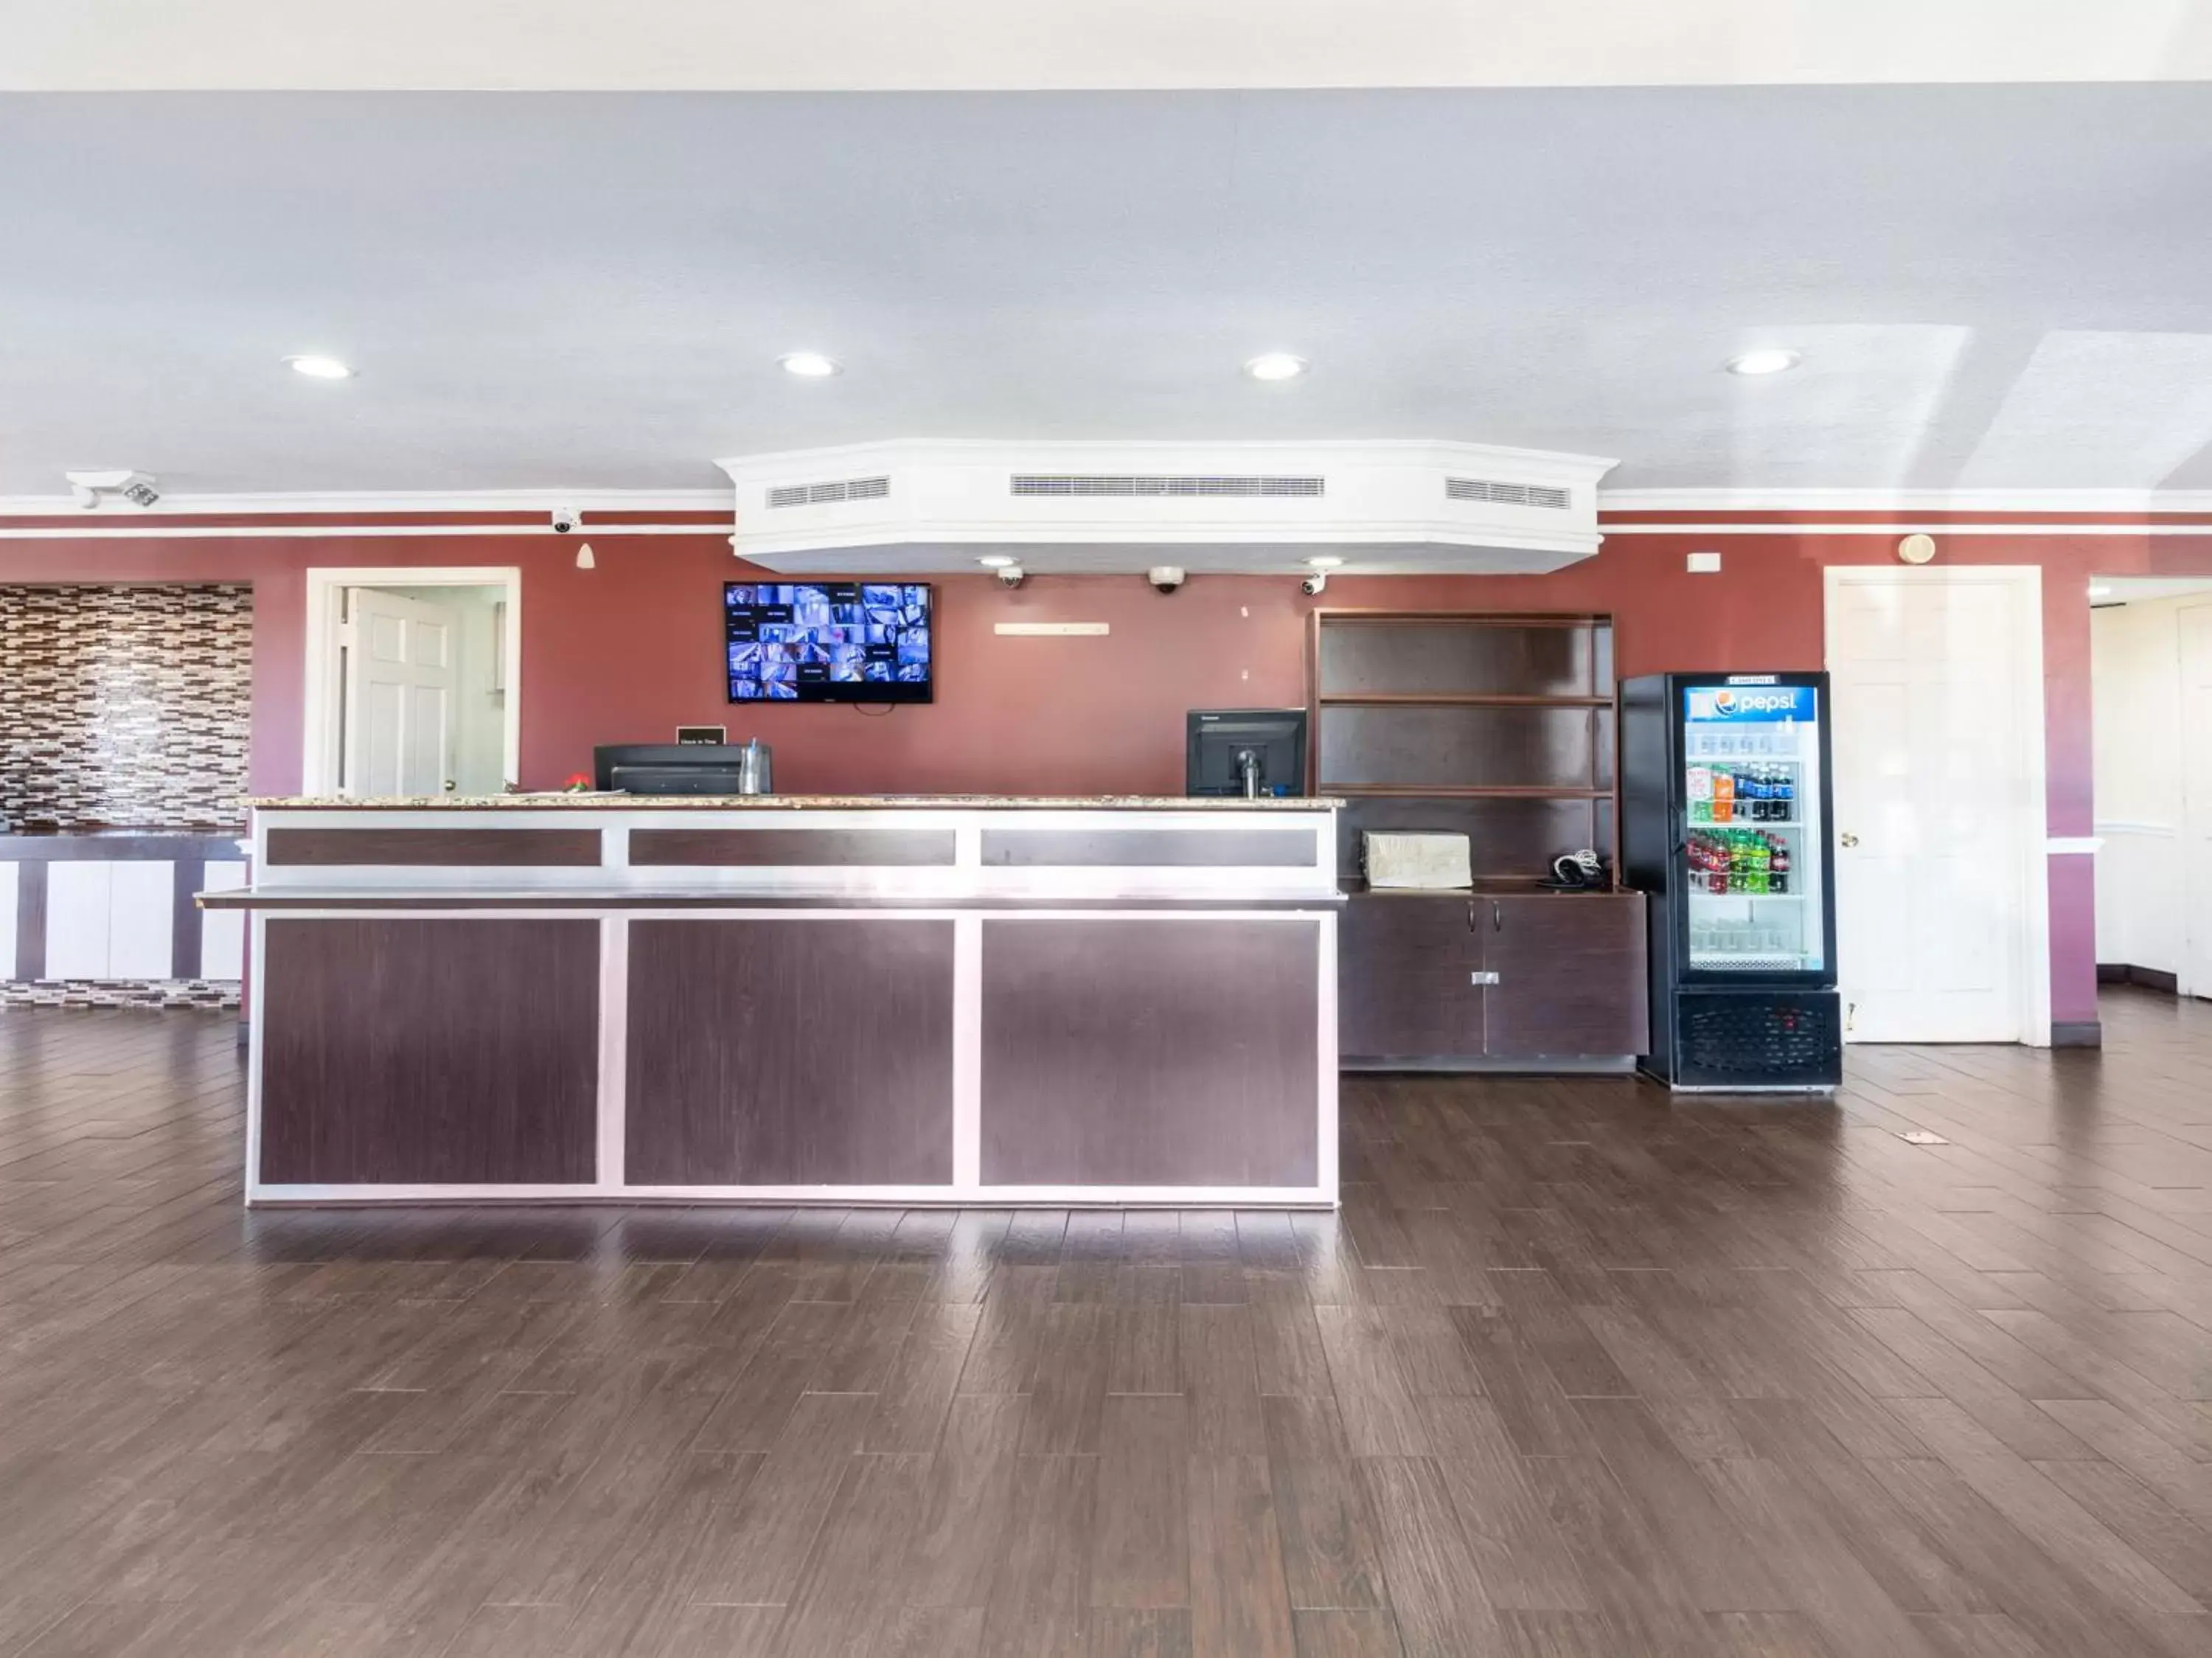 Lobby or reception, Lobby/Reception in OYO Hotel Tulsa N Sheridan Rd & Airport